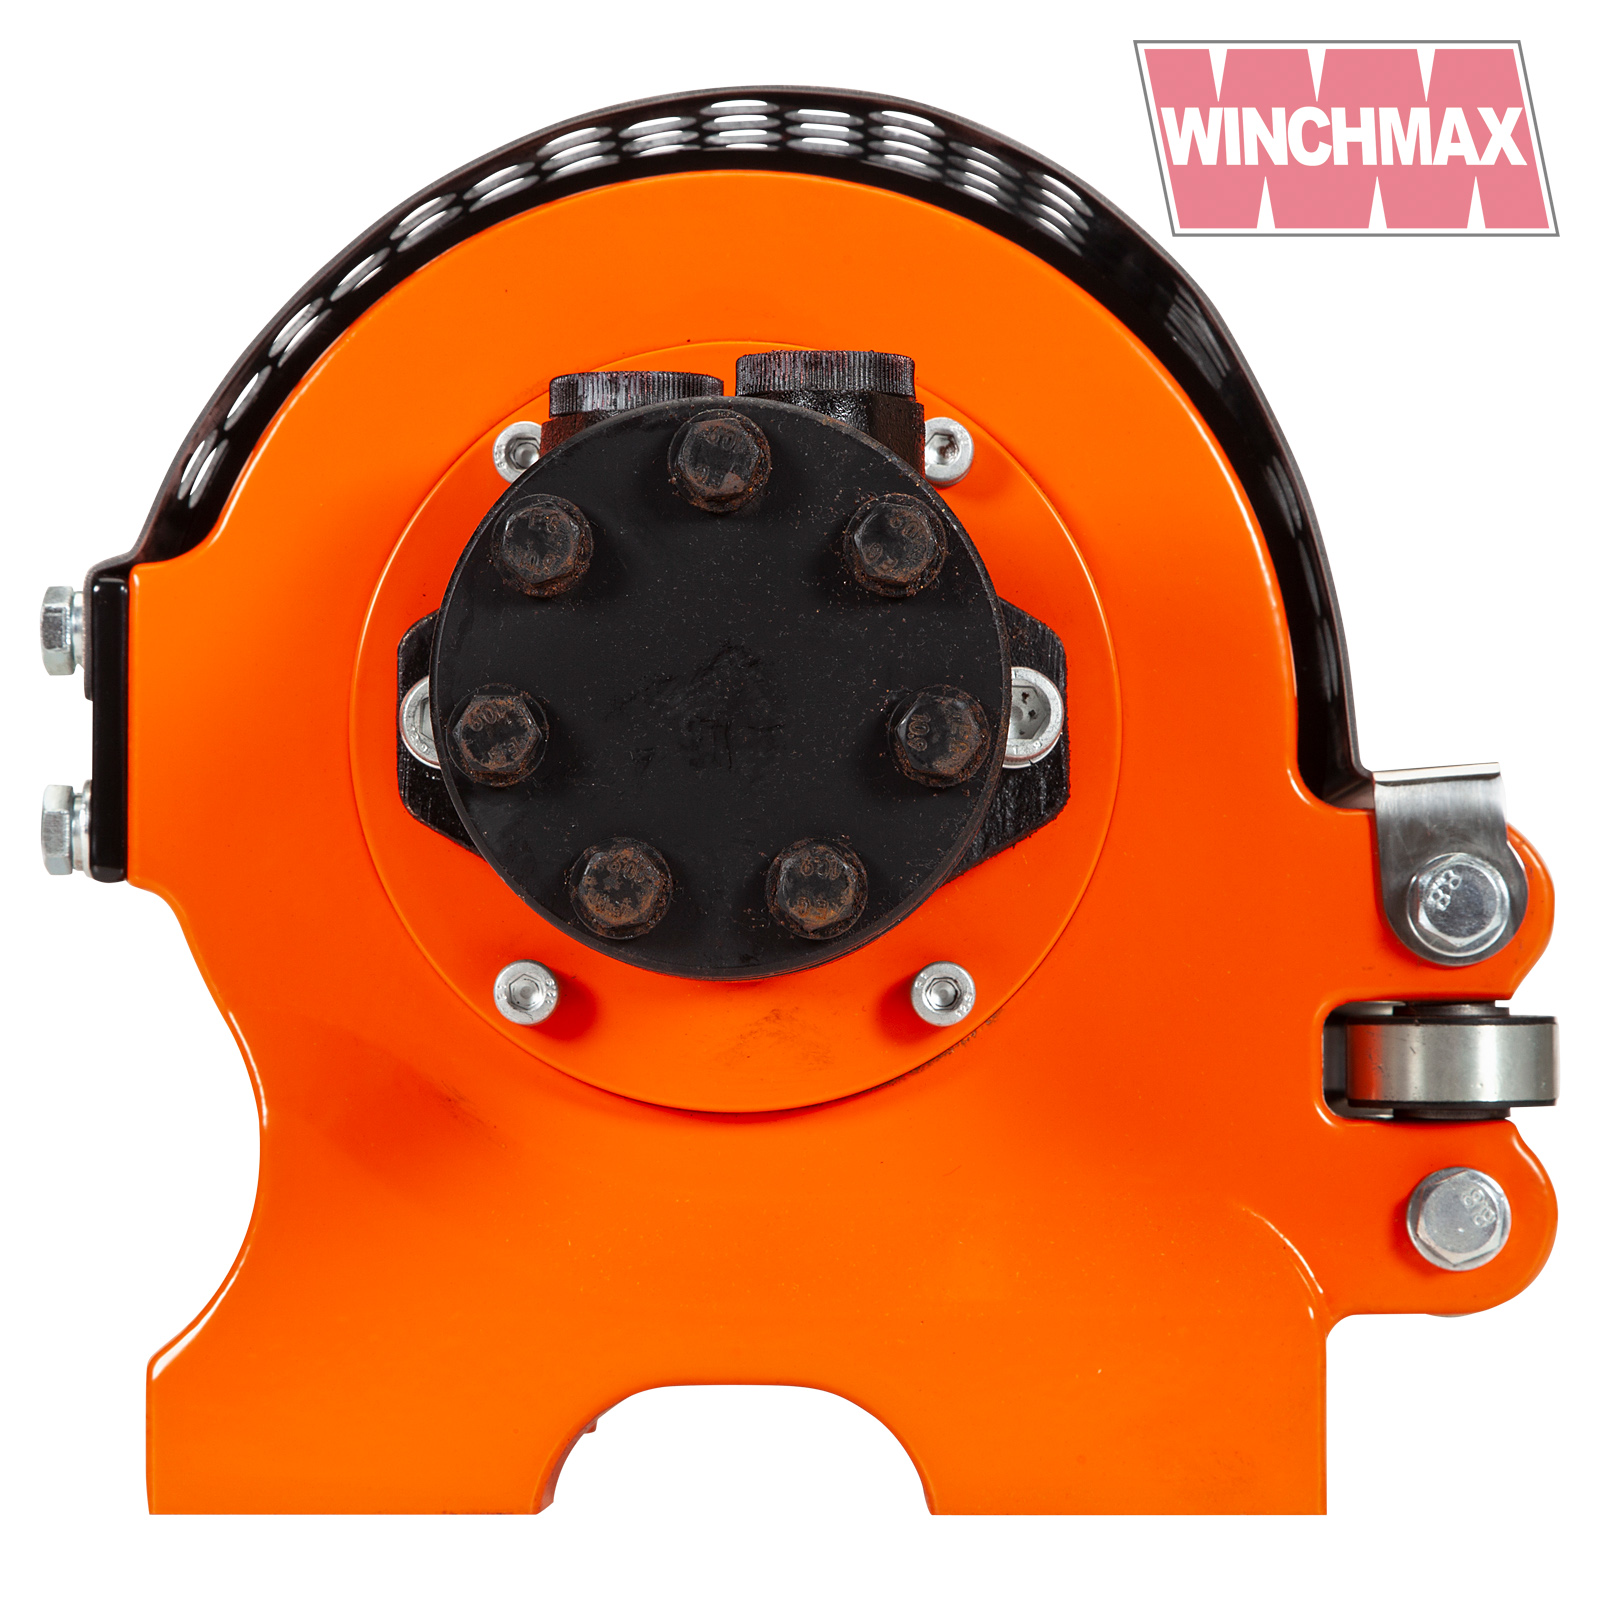 Winchmax 20000lb Hydraulic Winch